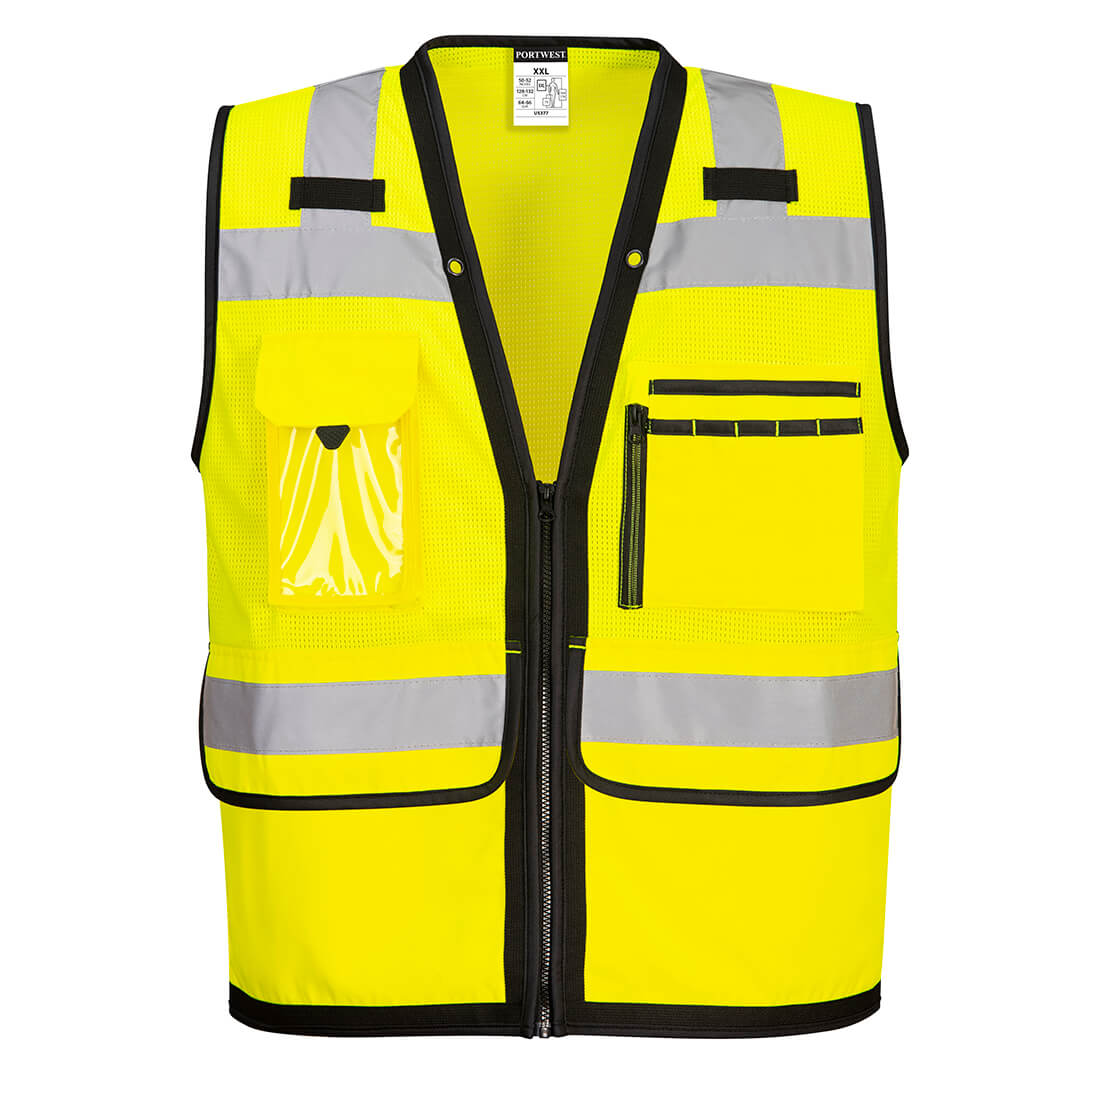 SHOP ALL - Safety Vests